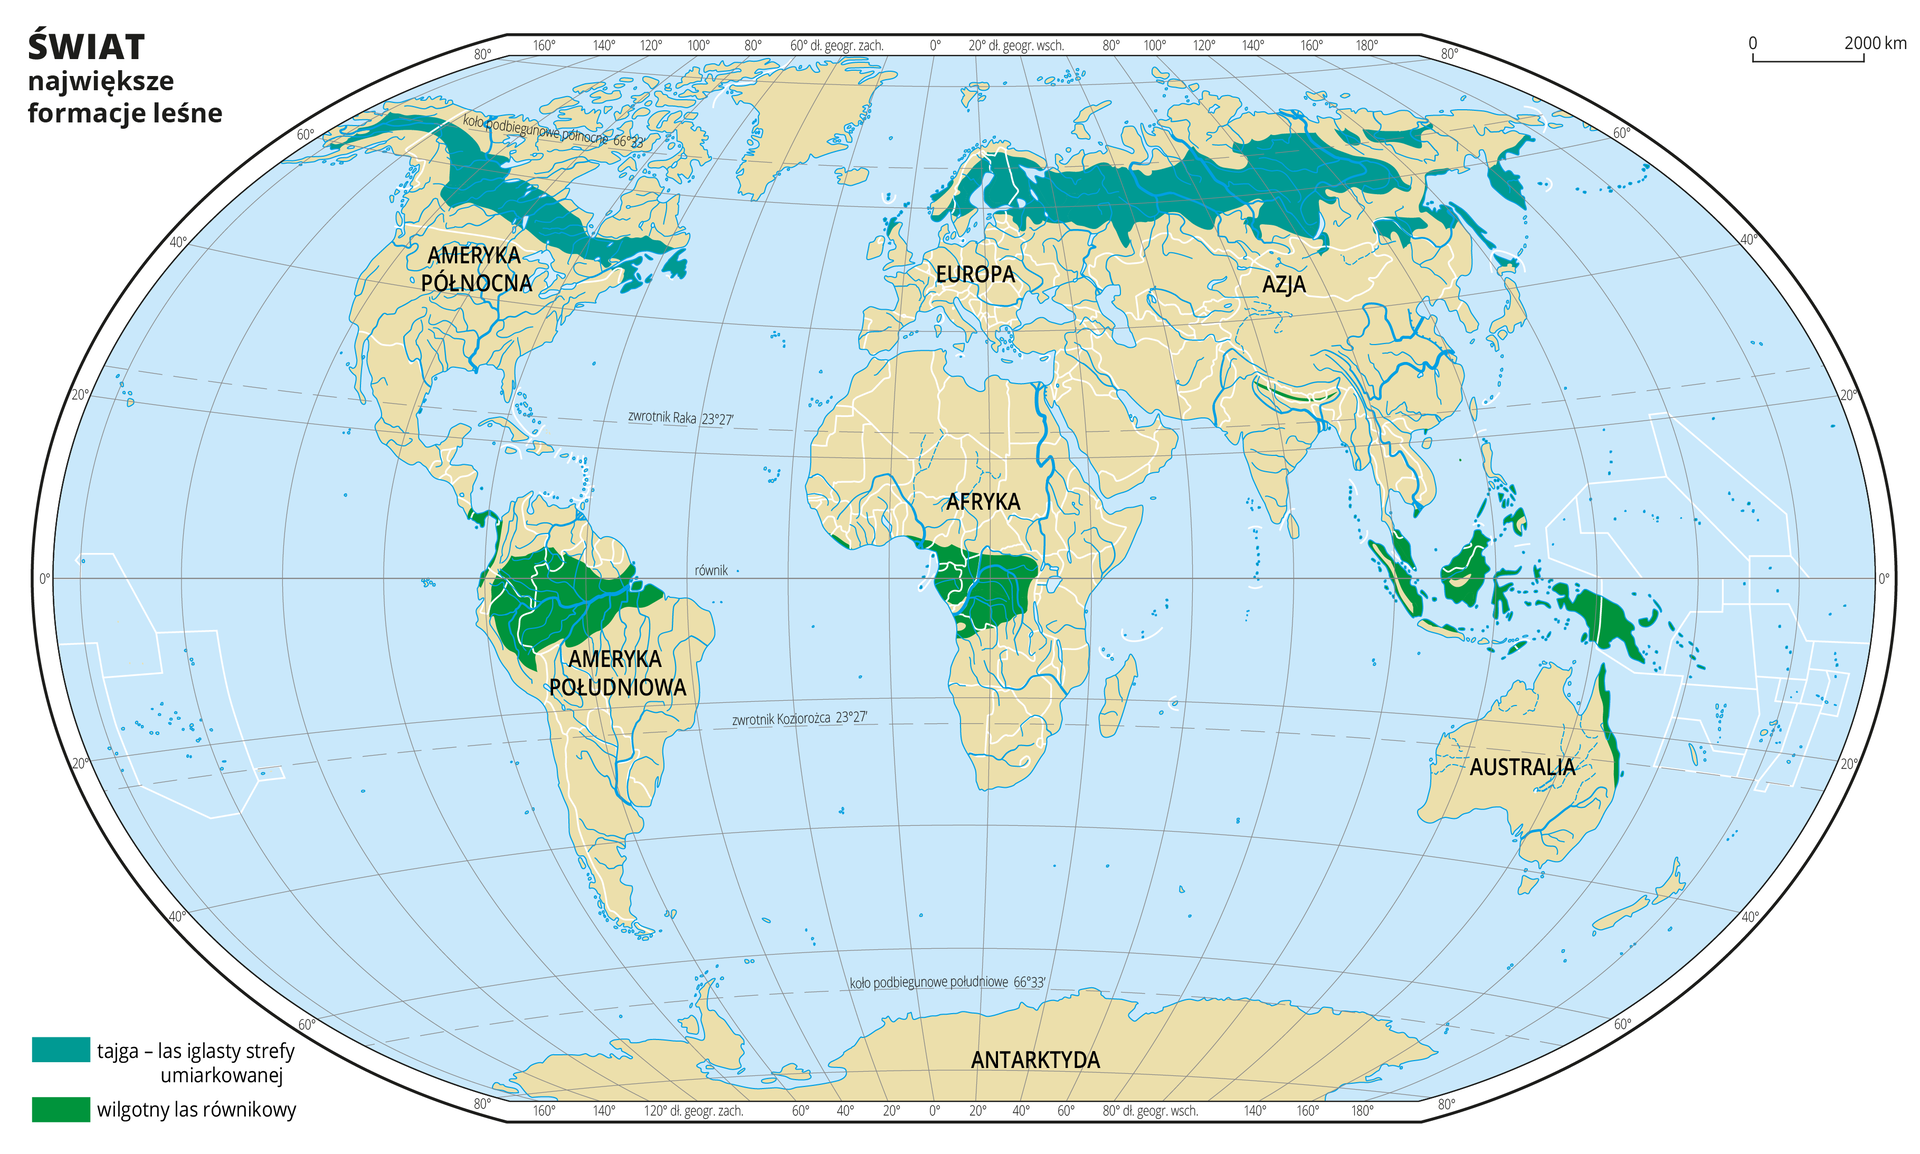 Ilustracja przedstawia mapę świata. Wody zaznaczono kolorem niebieskim. Opisano kontynenty.Na mapie za pomocą kolorów oznaczono występowanie największych formacji leśnych – tajgi i wilgotnych lasów równikowych. Kolorem zielonym oznaczono tajgę – obejmuje ona północną część Ameryki Północnej i północną część Azji. Kolorem zielonym oznaczono wilgotne lasy równikowe – występują one na obszarach położonych wzdłuż równika. Mapa pokryta jest równoleżnikami i południkami. Dookoła mapy w białej ramce opisano współrzędne geograficzne co dwadzieścia stopni.Po lewej stronie narysowano dwa prostokąty i objaśniono kolory użyte na mapie.